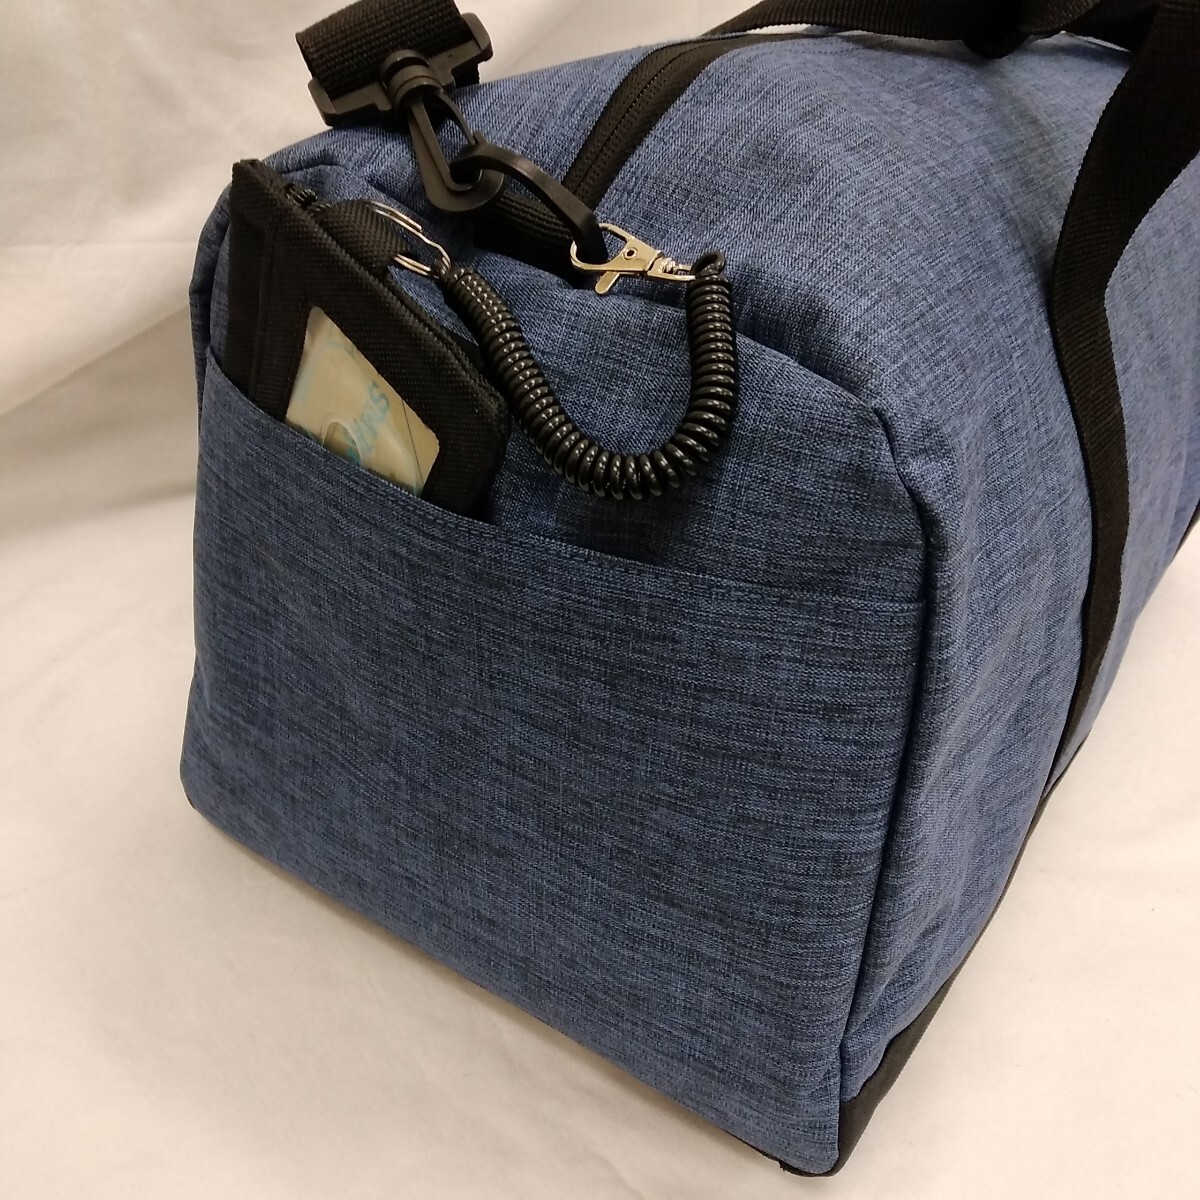  новый товар не использовался бесплатная доставка мужской женский Kids простой сумка "Boston bag" ручная сумка сумка сумка на плечо путешествие для спорт сумка 